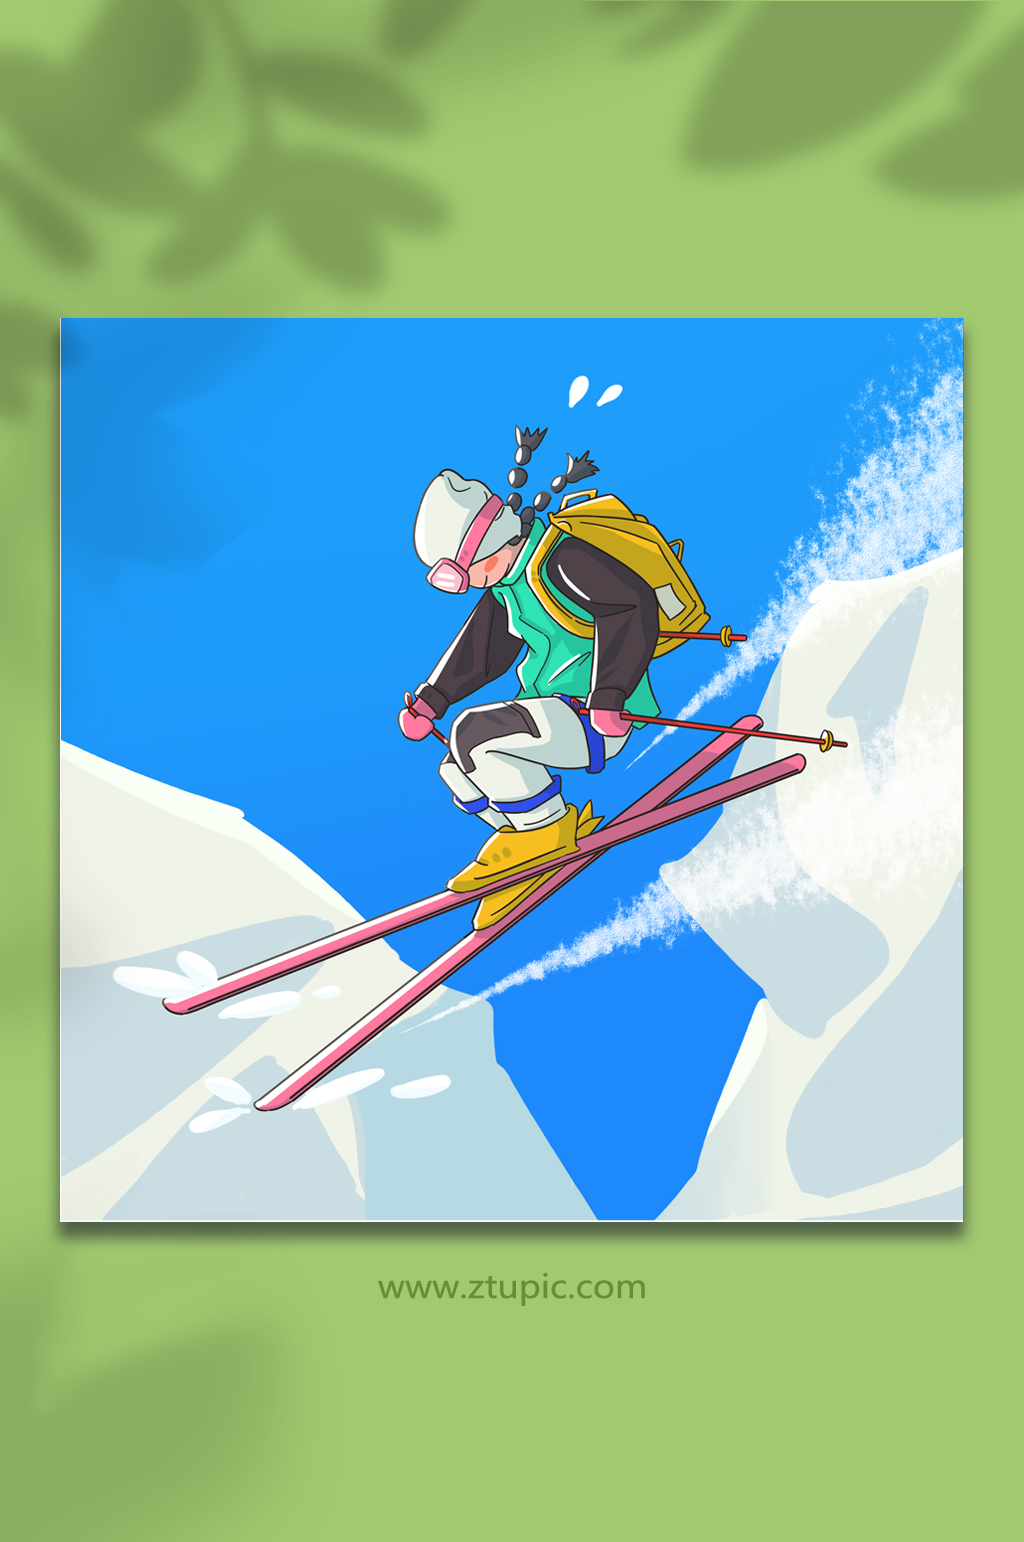 花样滑冰滑雪冬季运动人物合集元素综合排列热门下载最新上传您当前的